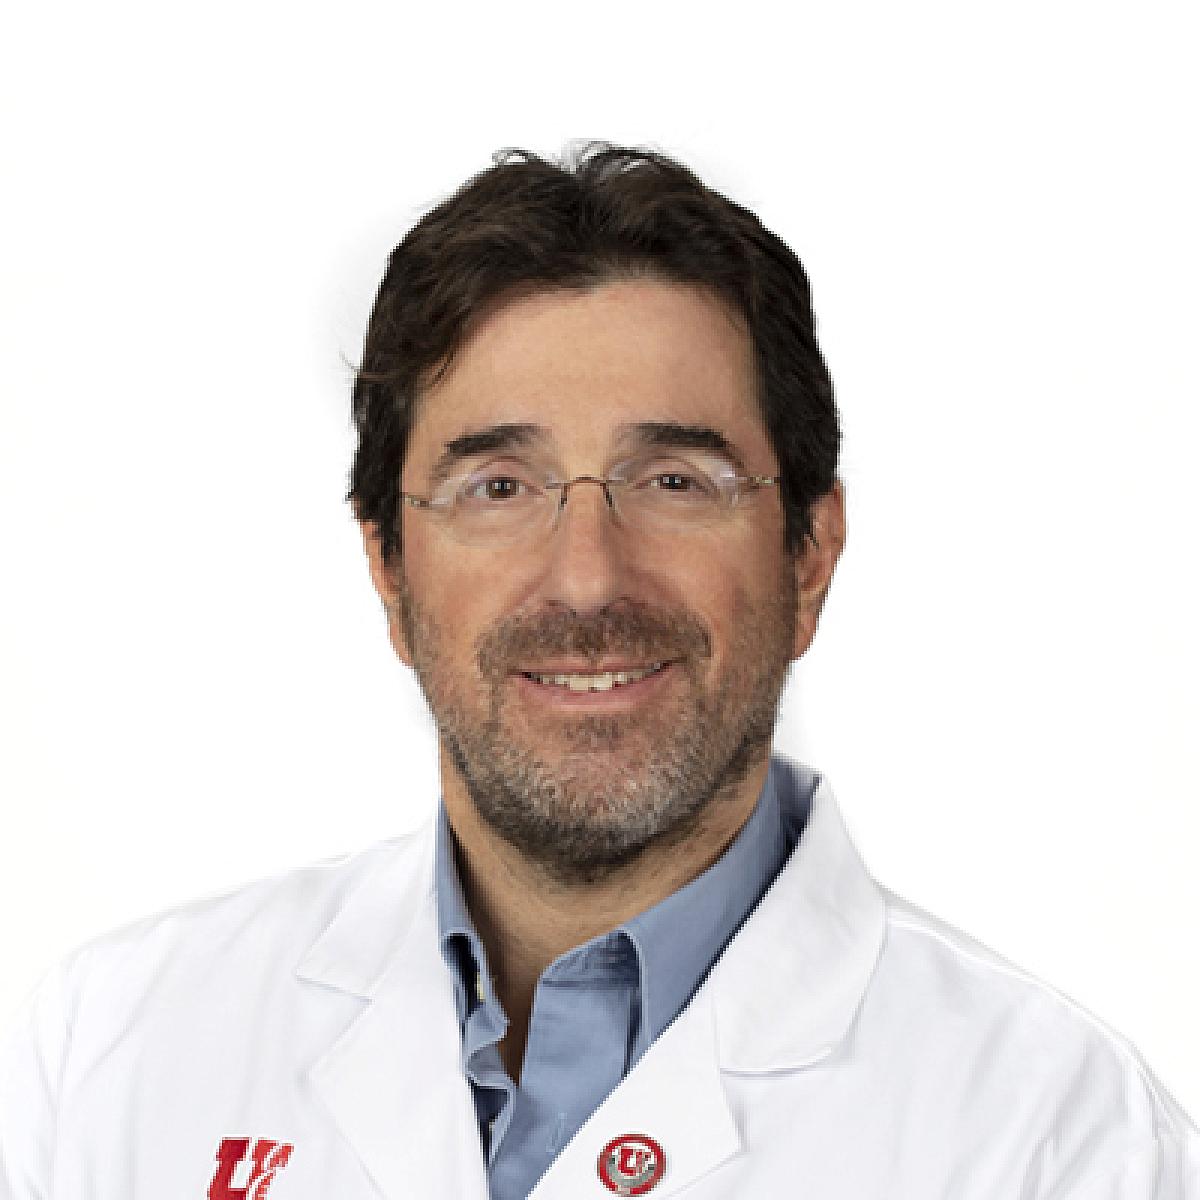 Dr. Craig Selzman